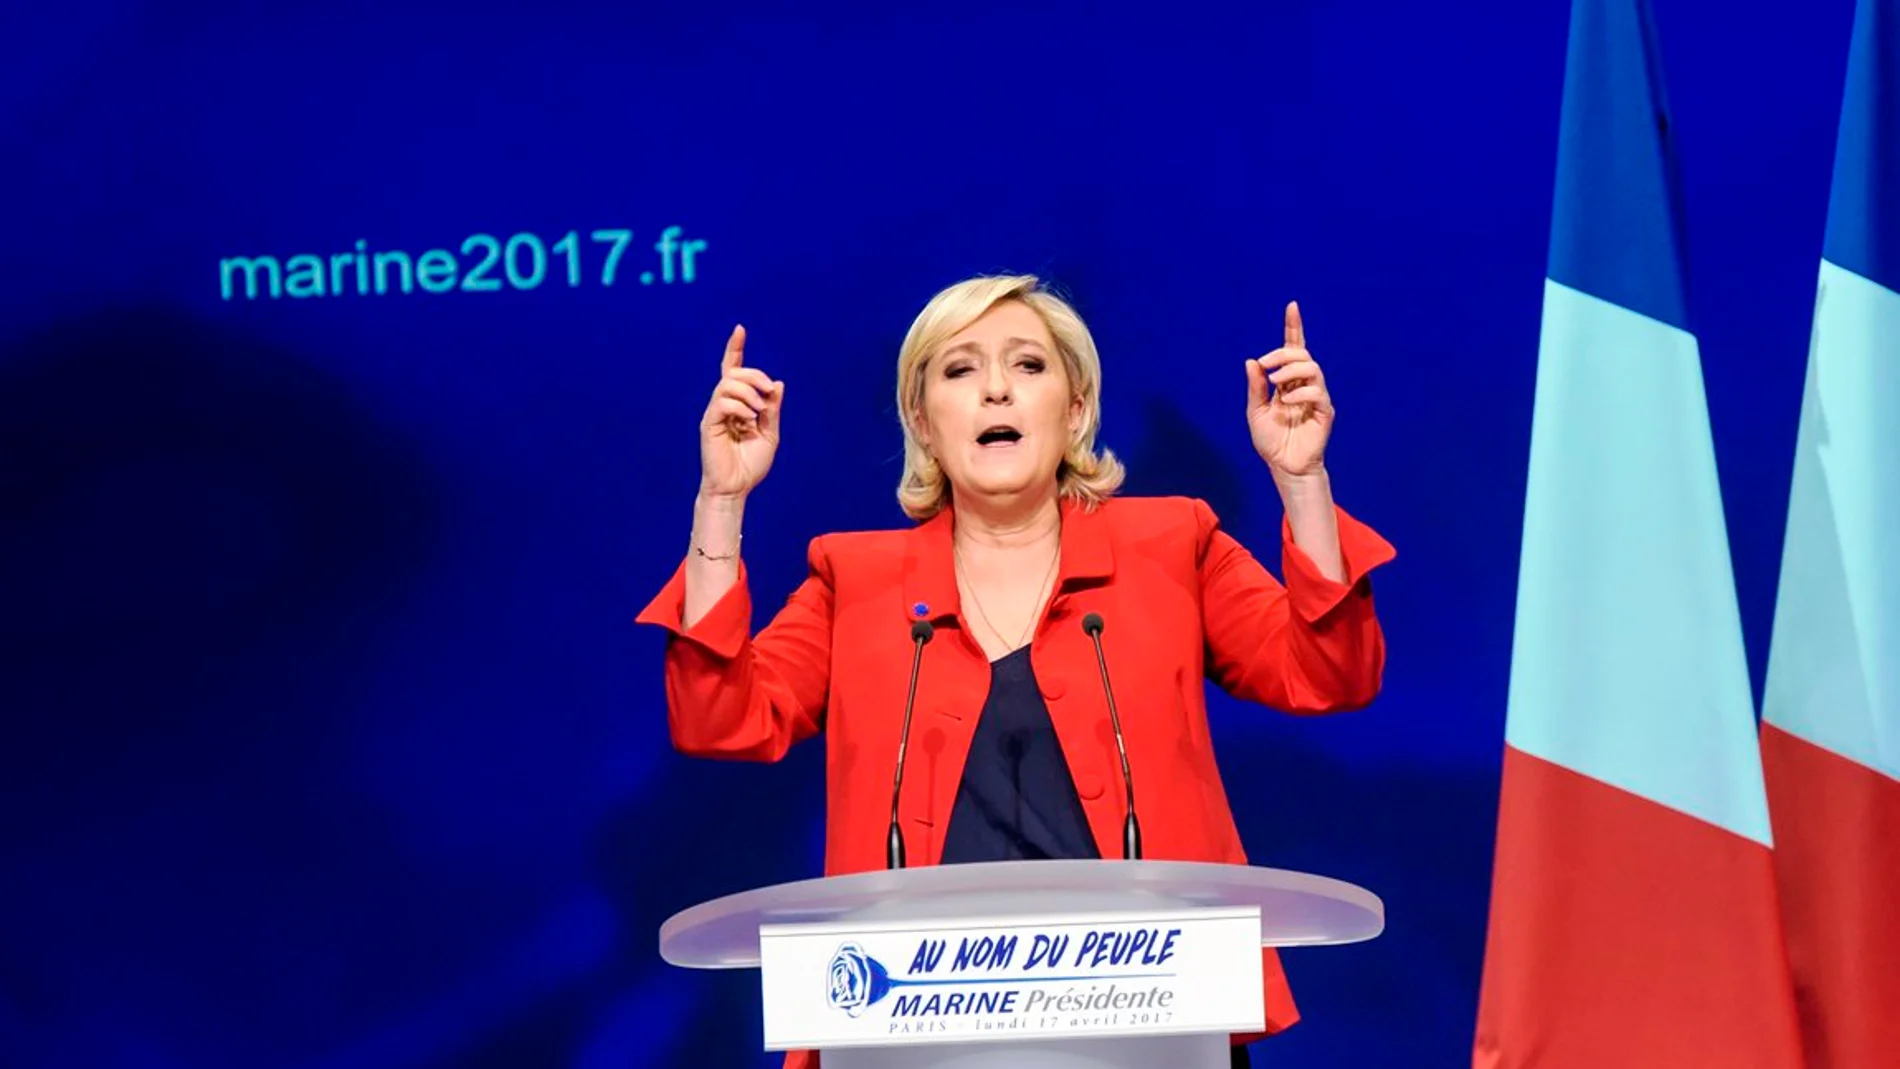 La líder y candidata del partido Frente Nacional, Marine Le Pen, da un discurso electoral